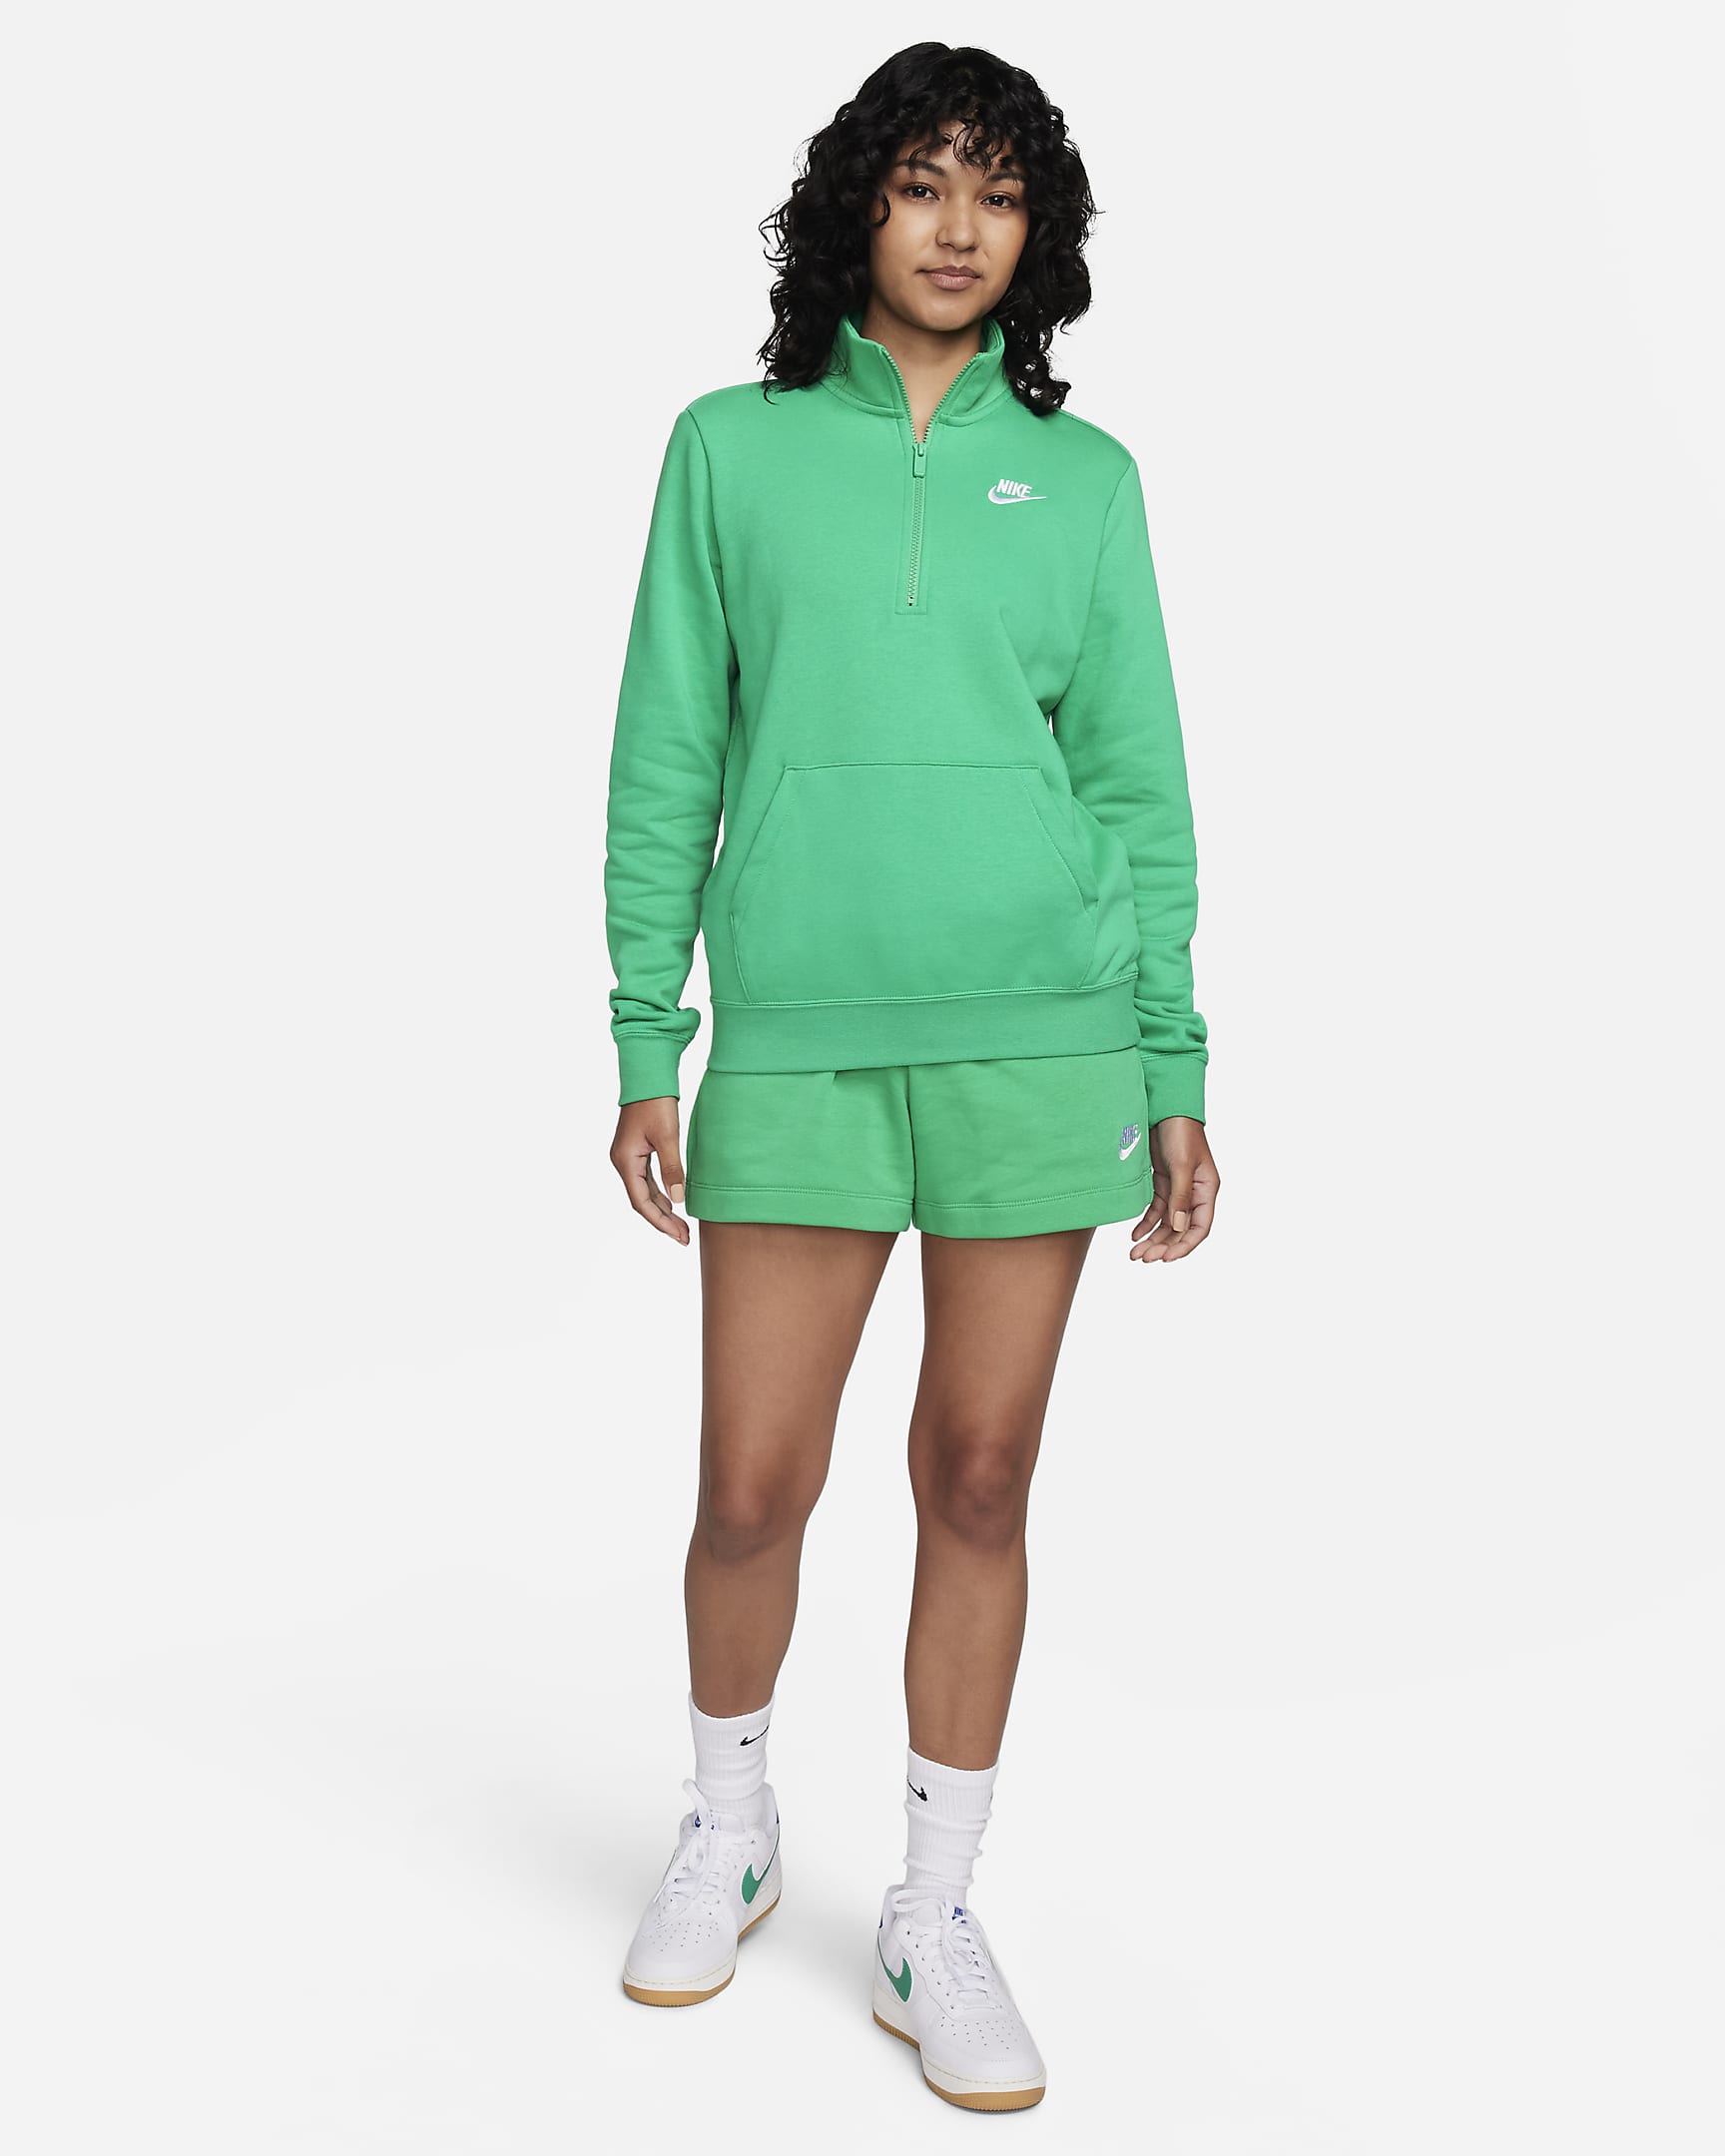 Nike Sportswear Club Fleece Women's 1/2-Zip Sweatshirt. Nike.com